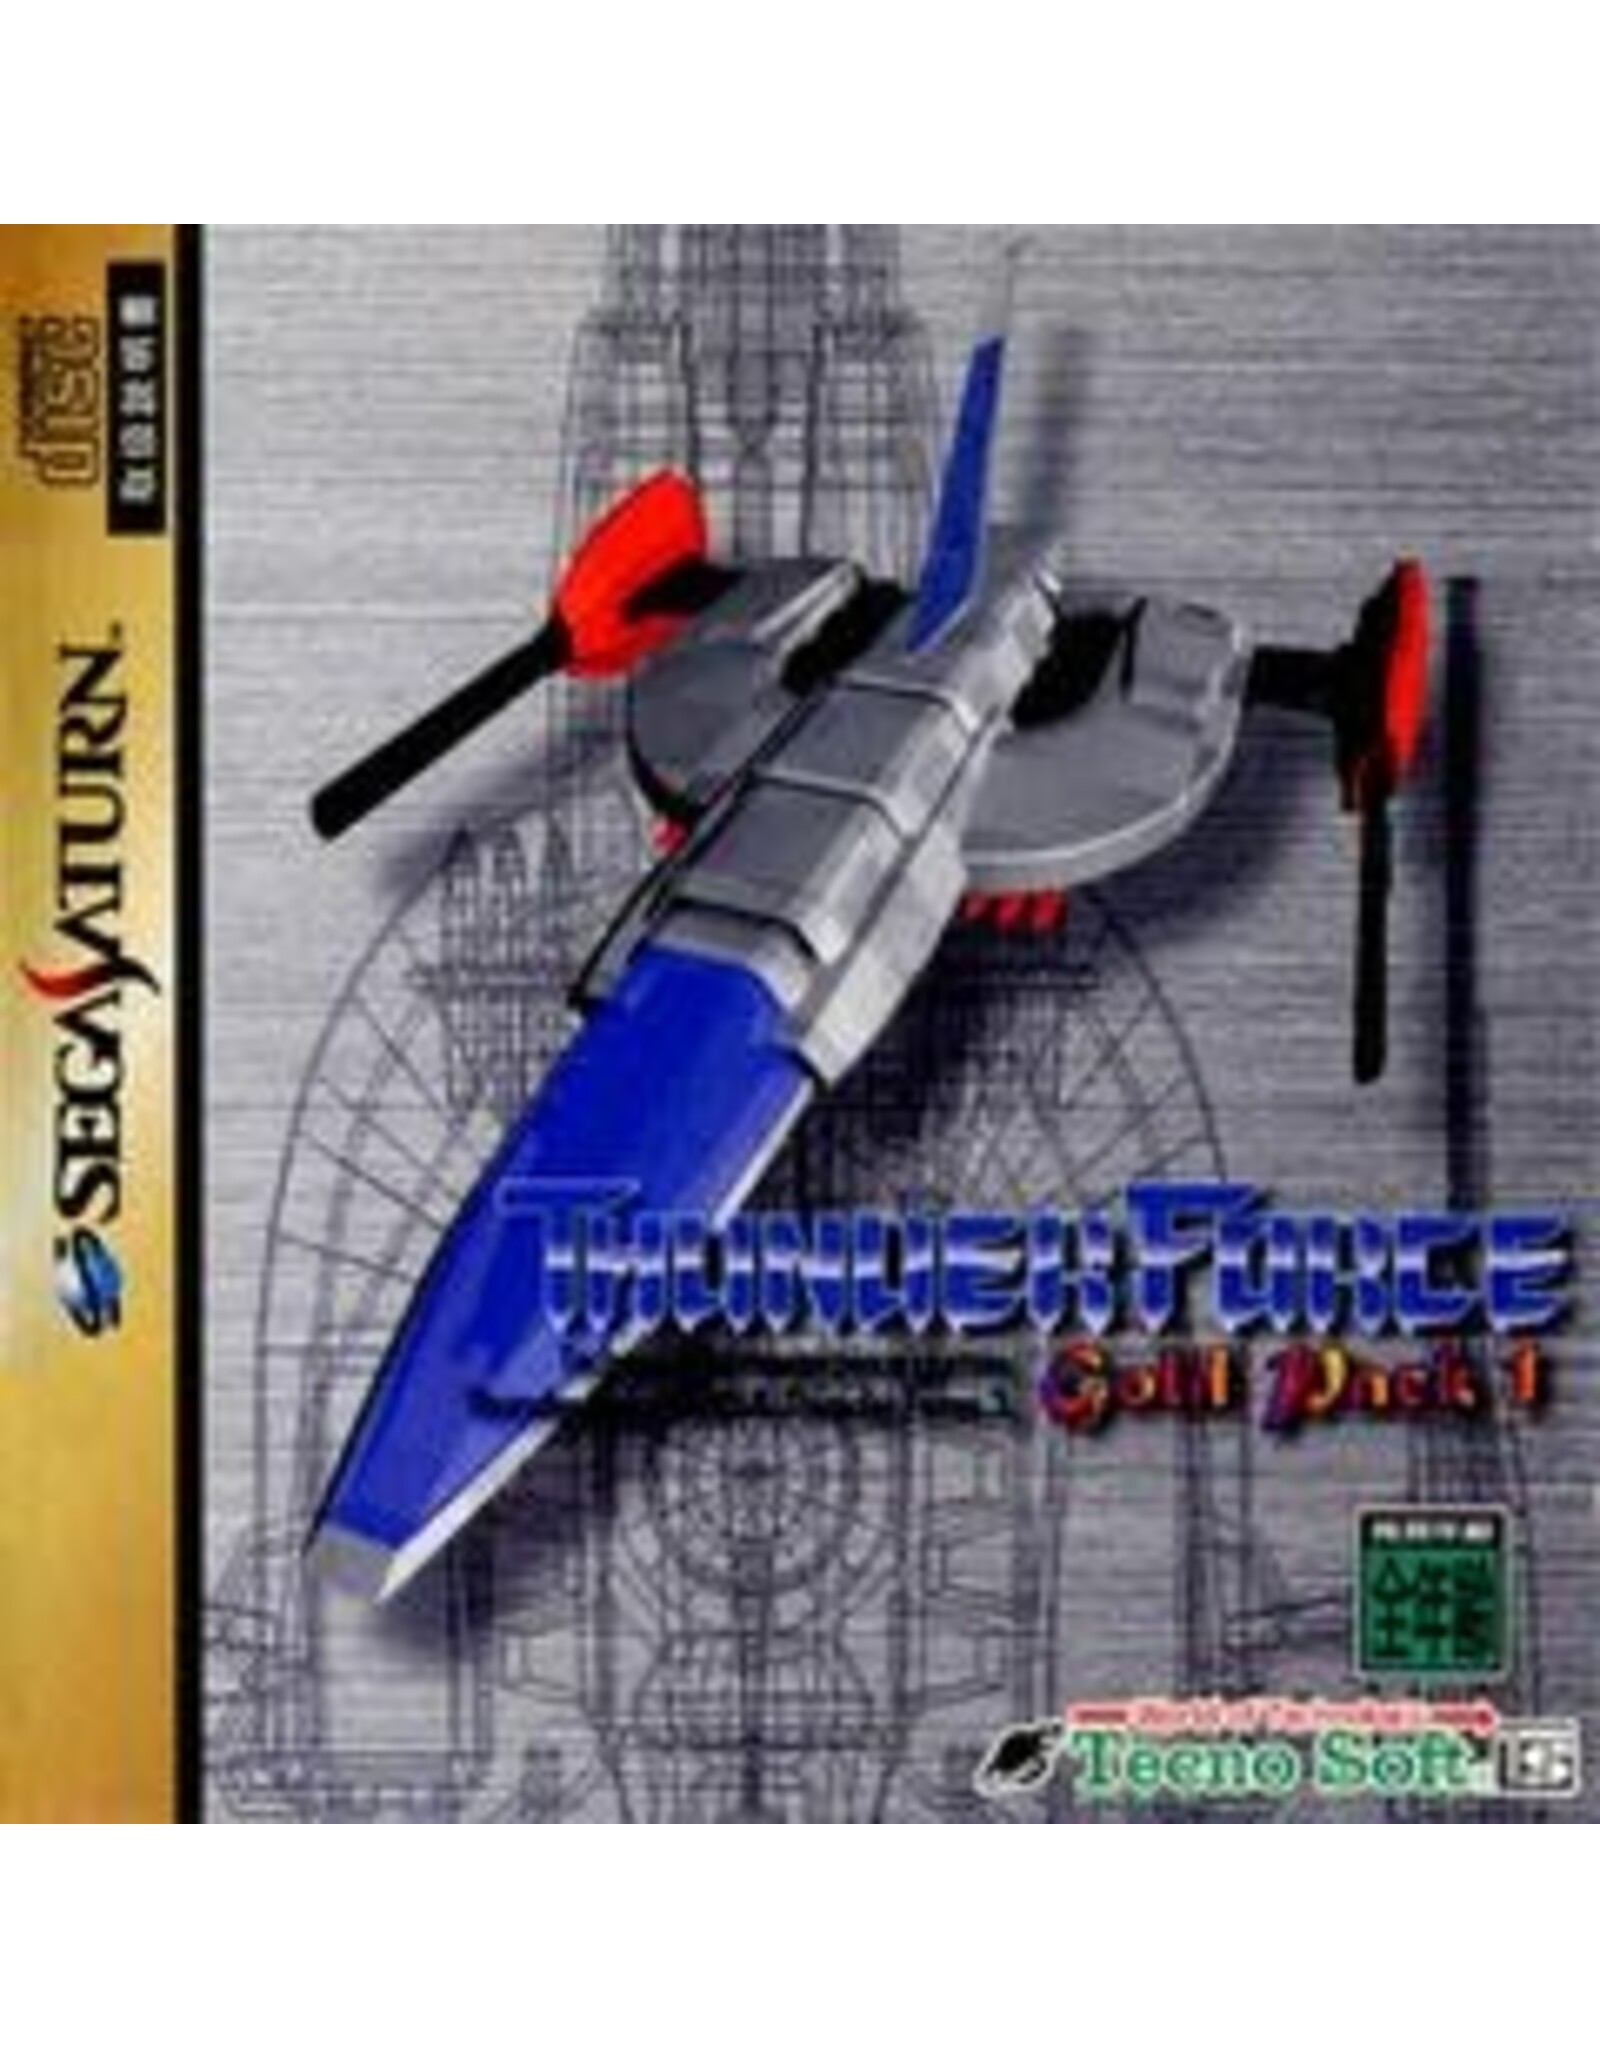 Sega Saturn Thunder Force: Gold Pack 1 (Disc Only, JP Import)